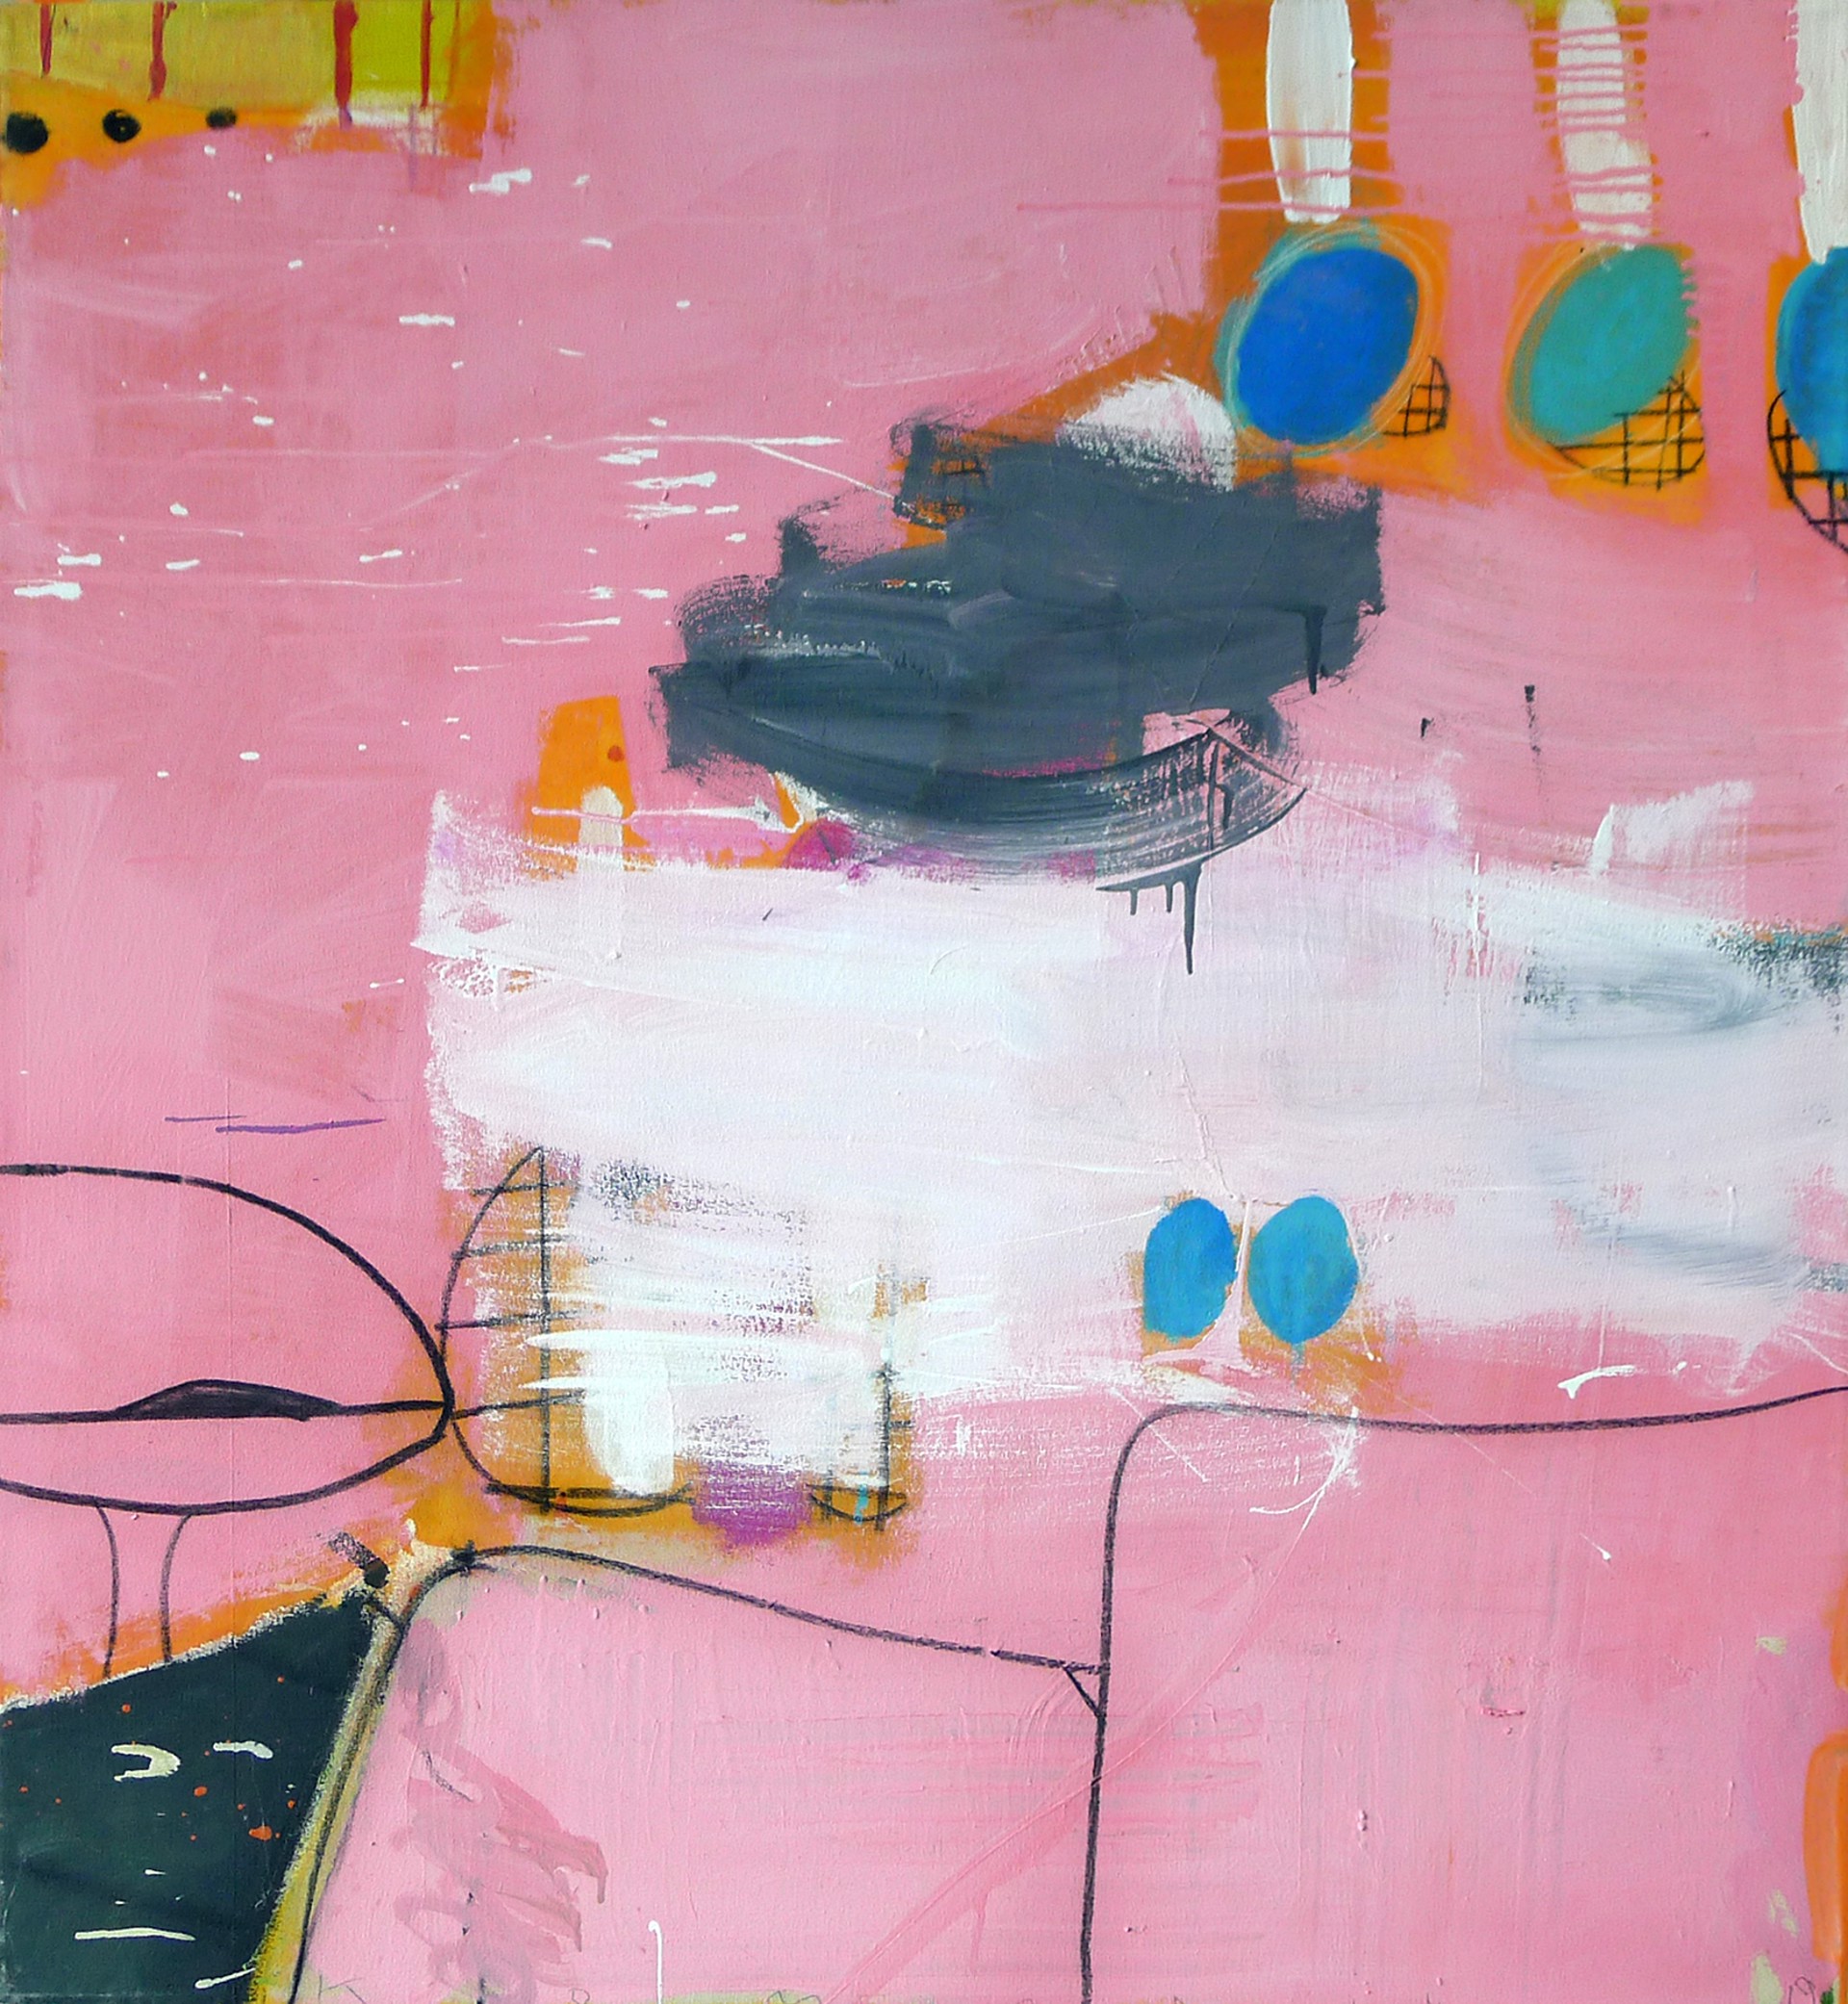 Big Pink Mambo by Gary Komarin